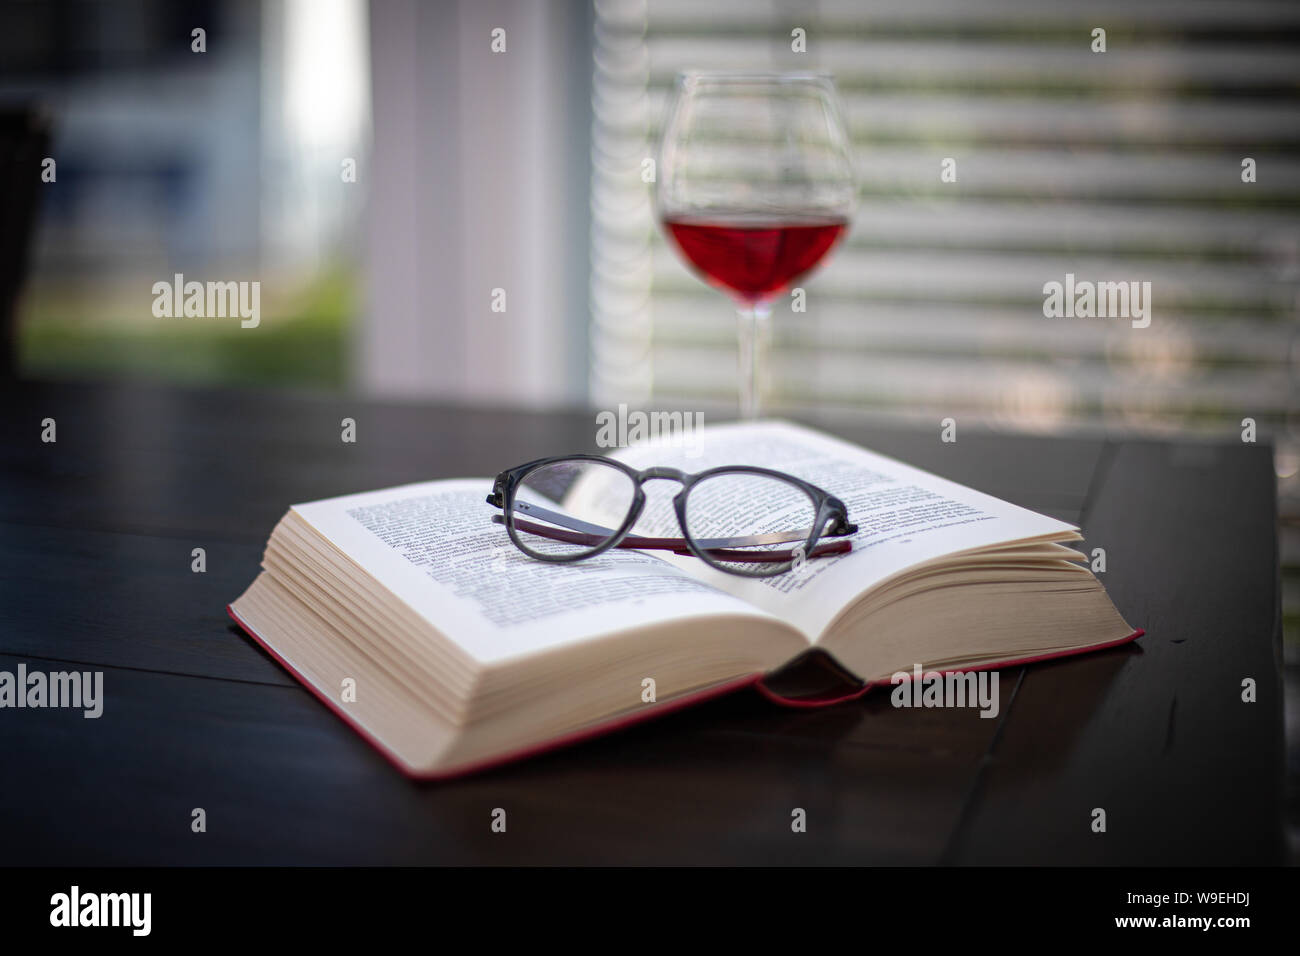 Une paire de lunettes se trouve sur un livre ouvert et à l'arrière-plan est un verre à vin Banque D'Images